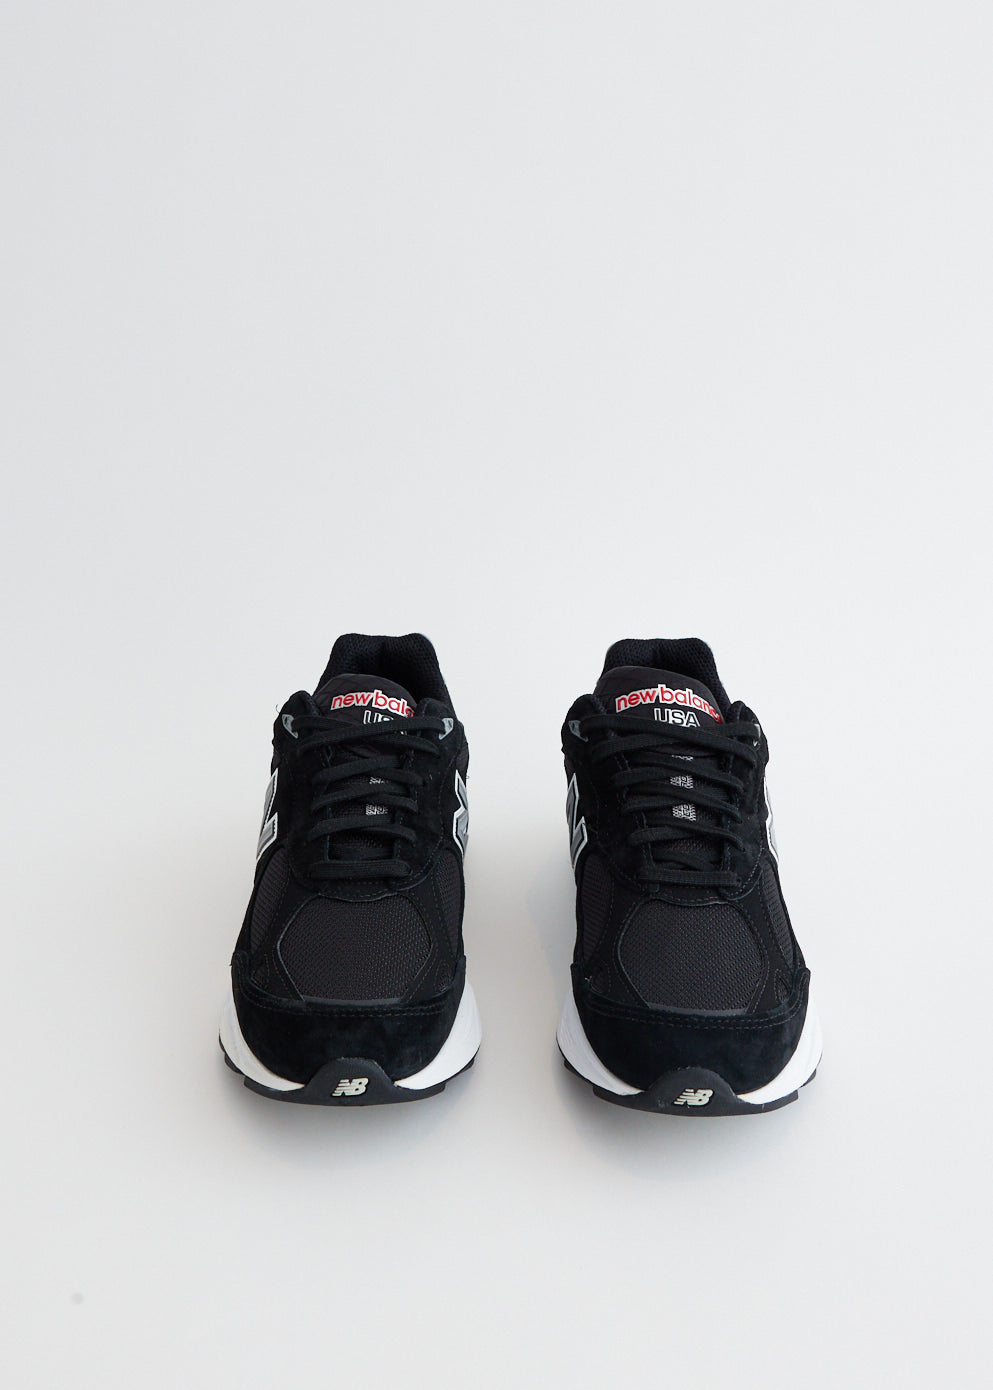 990v3 'Black' Sneakers